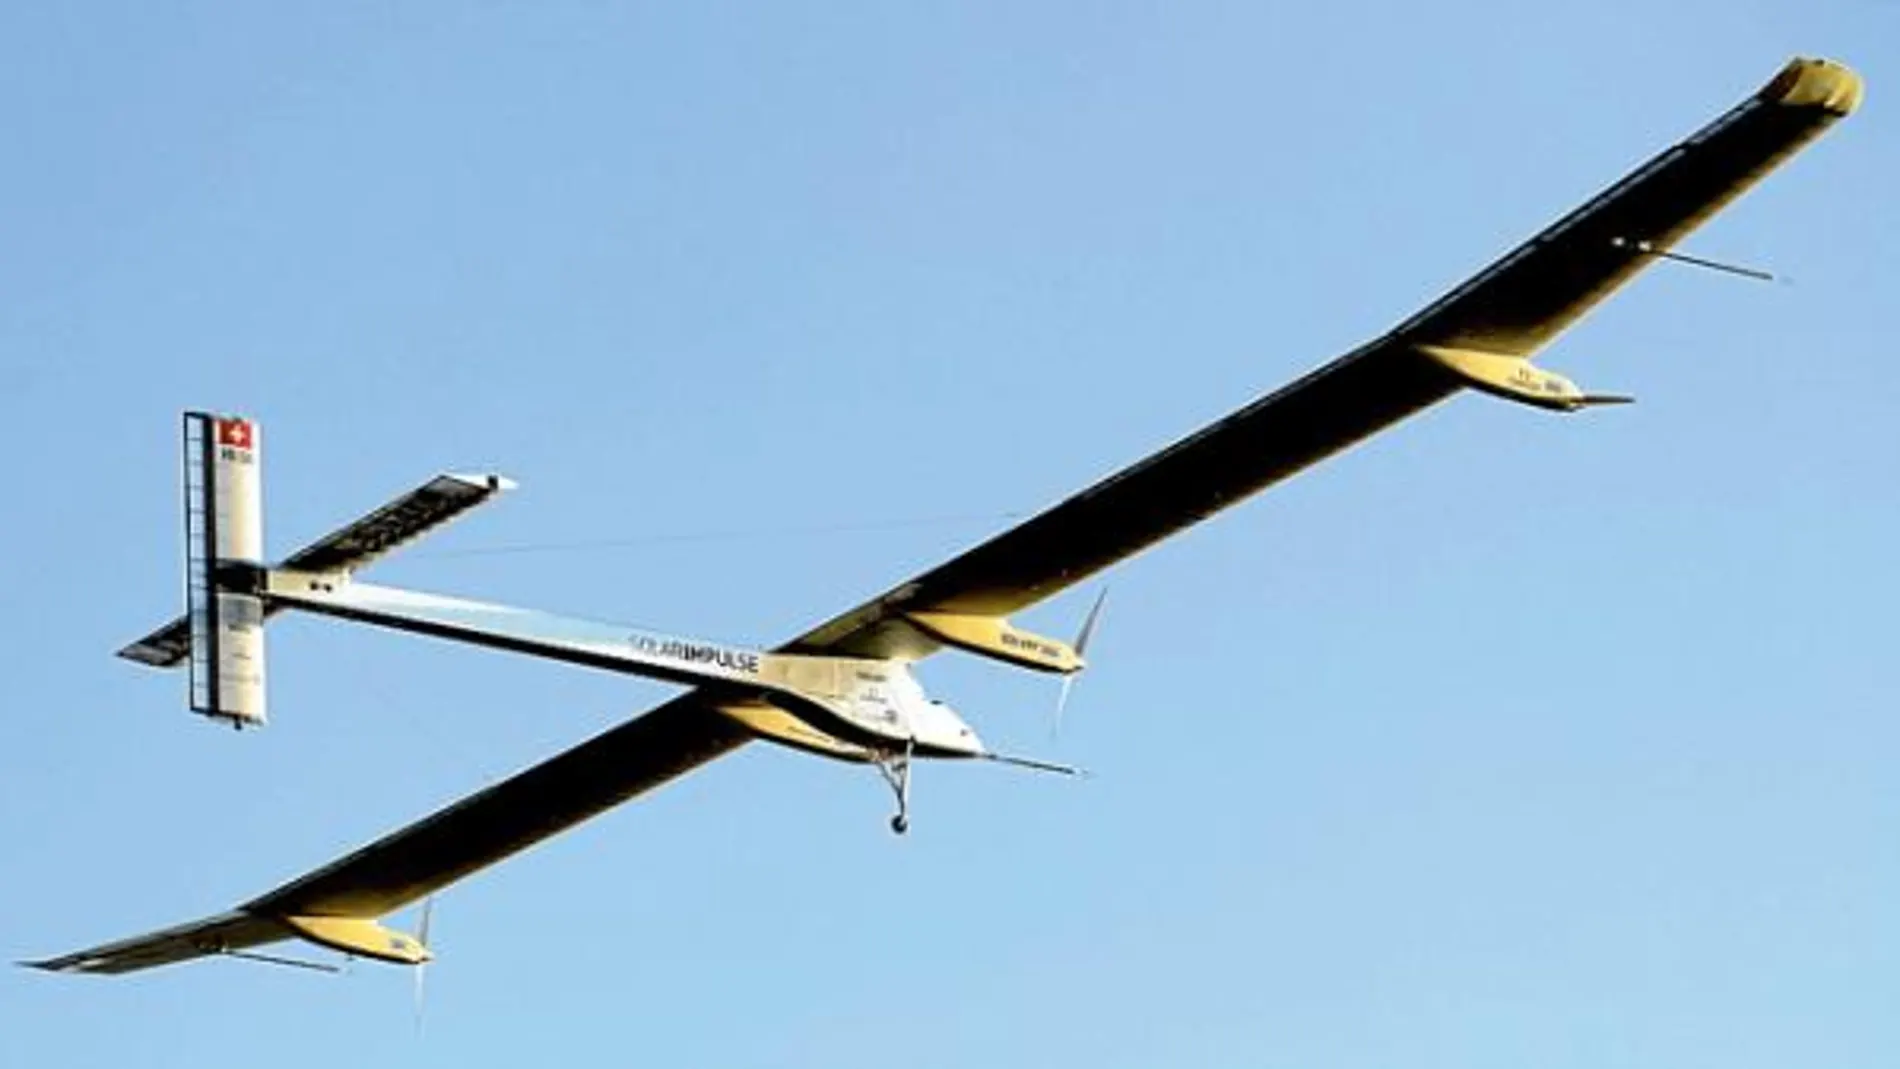 El avión solar aterriza tras 26 horas de vuelo propulsado sólo por la fotovoltaica